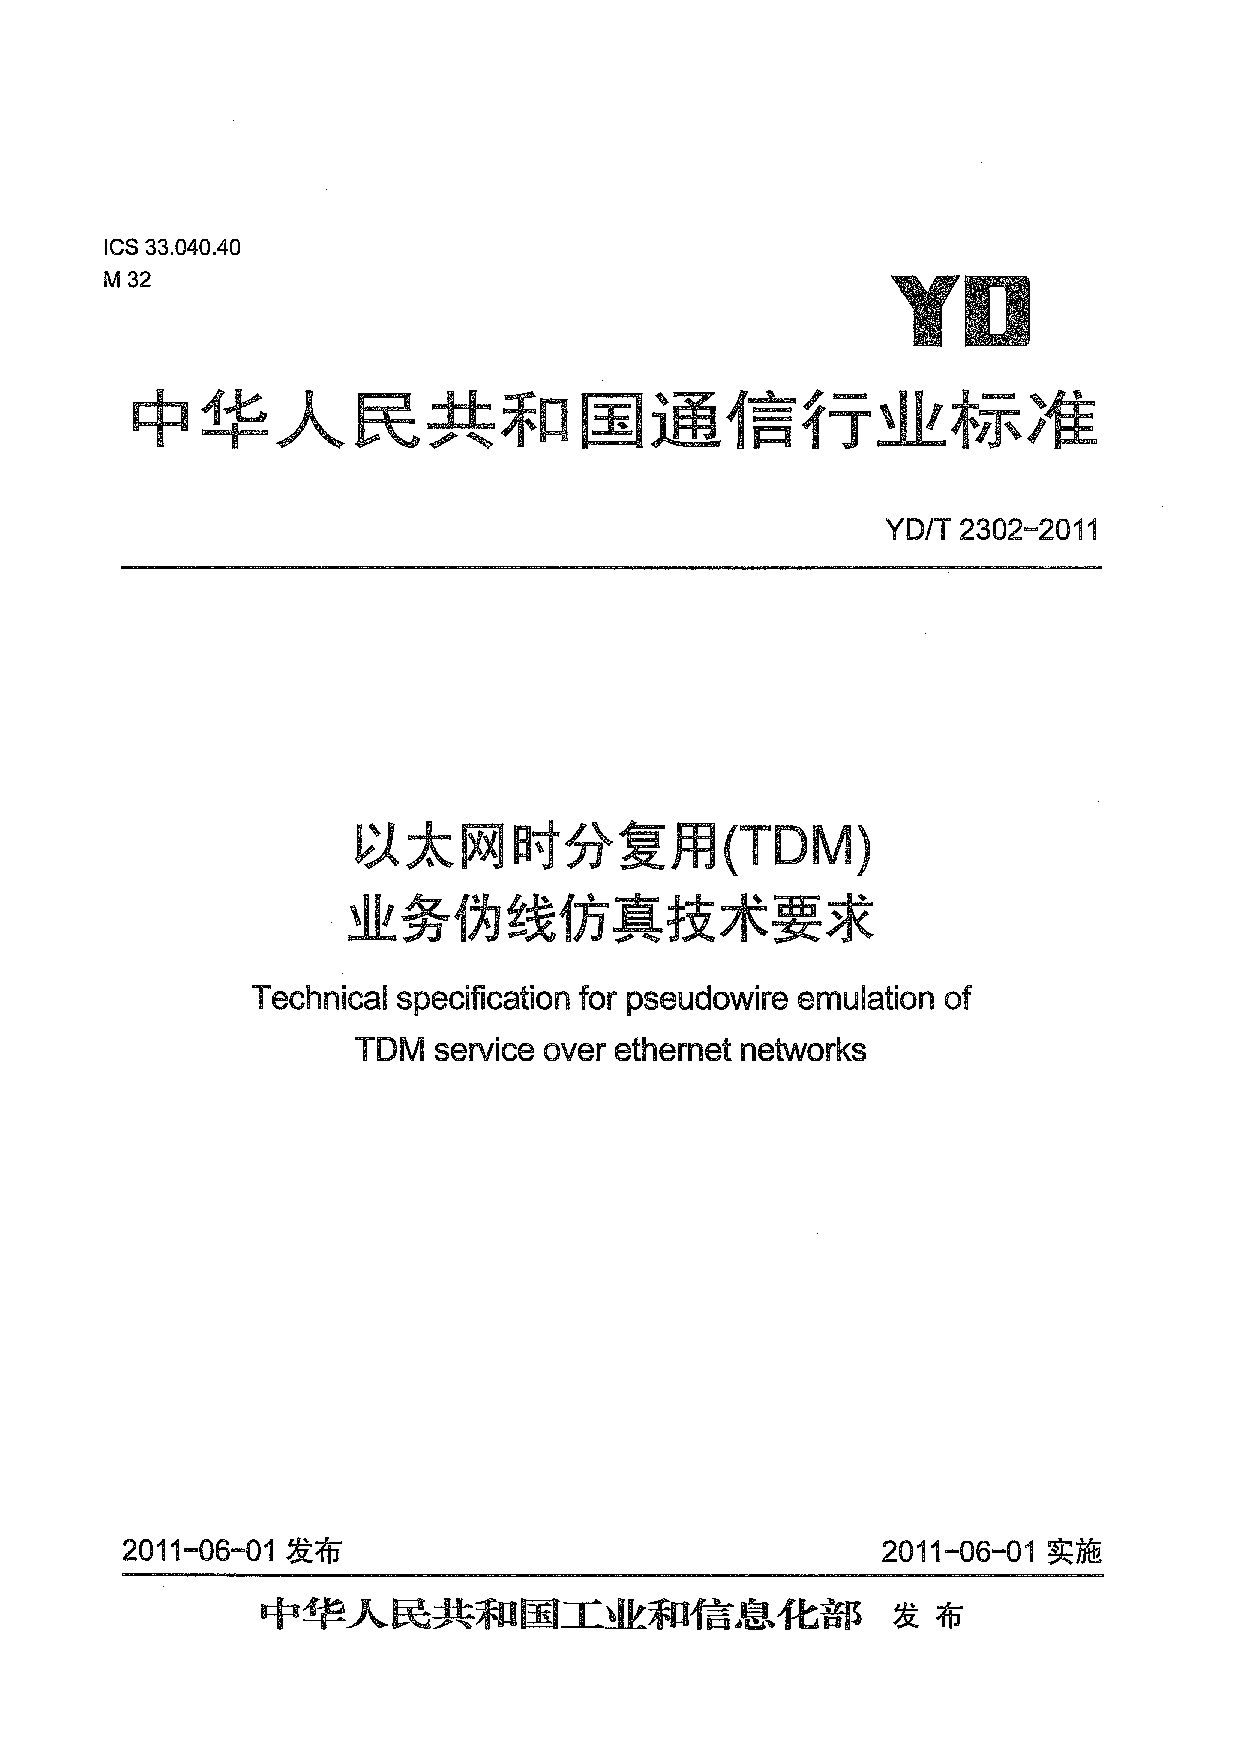 YD/T 2302-2011